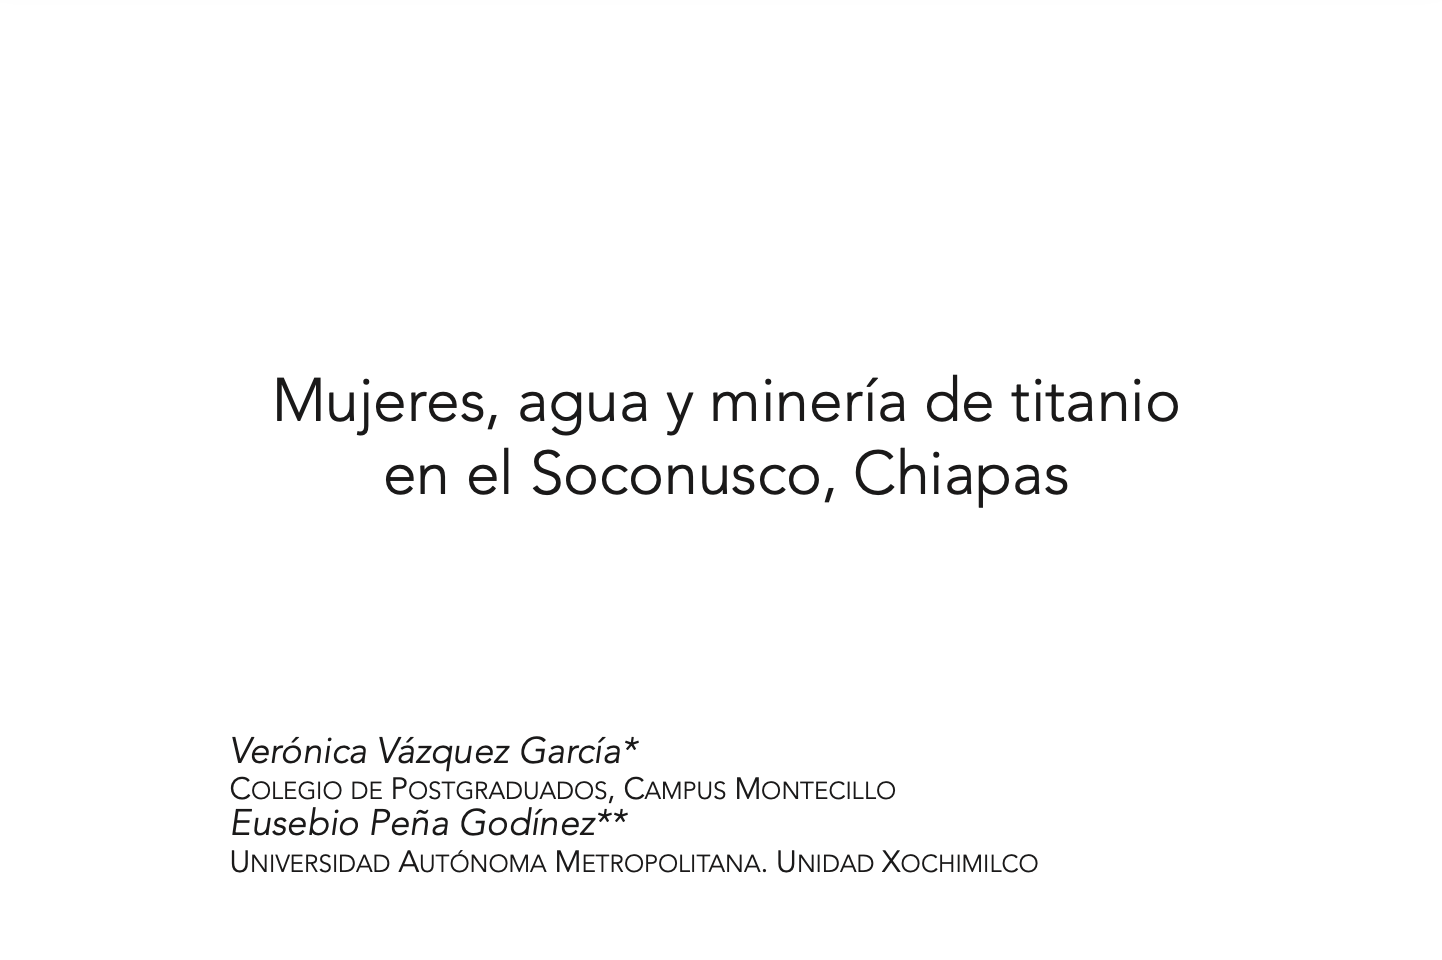 Mujeres, agua y minería de titanio en el Soconusco, Chiapas (Cuicuilco)